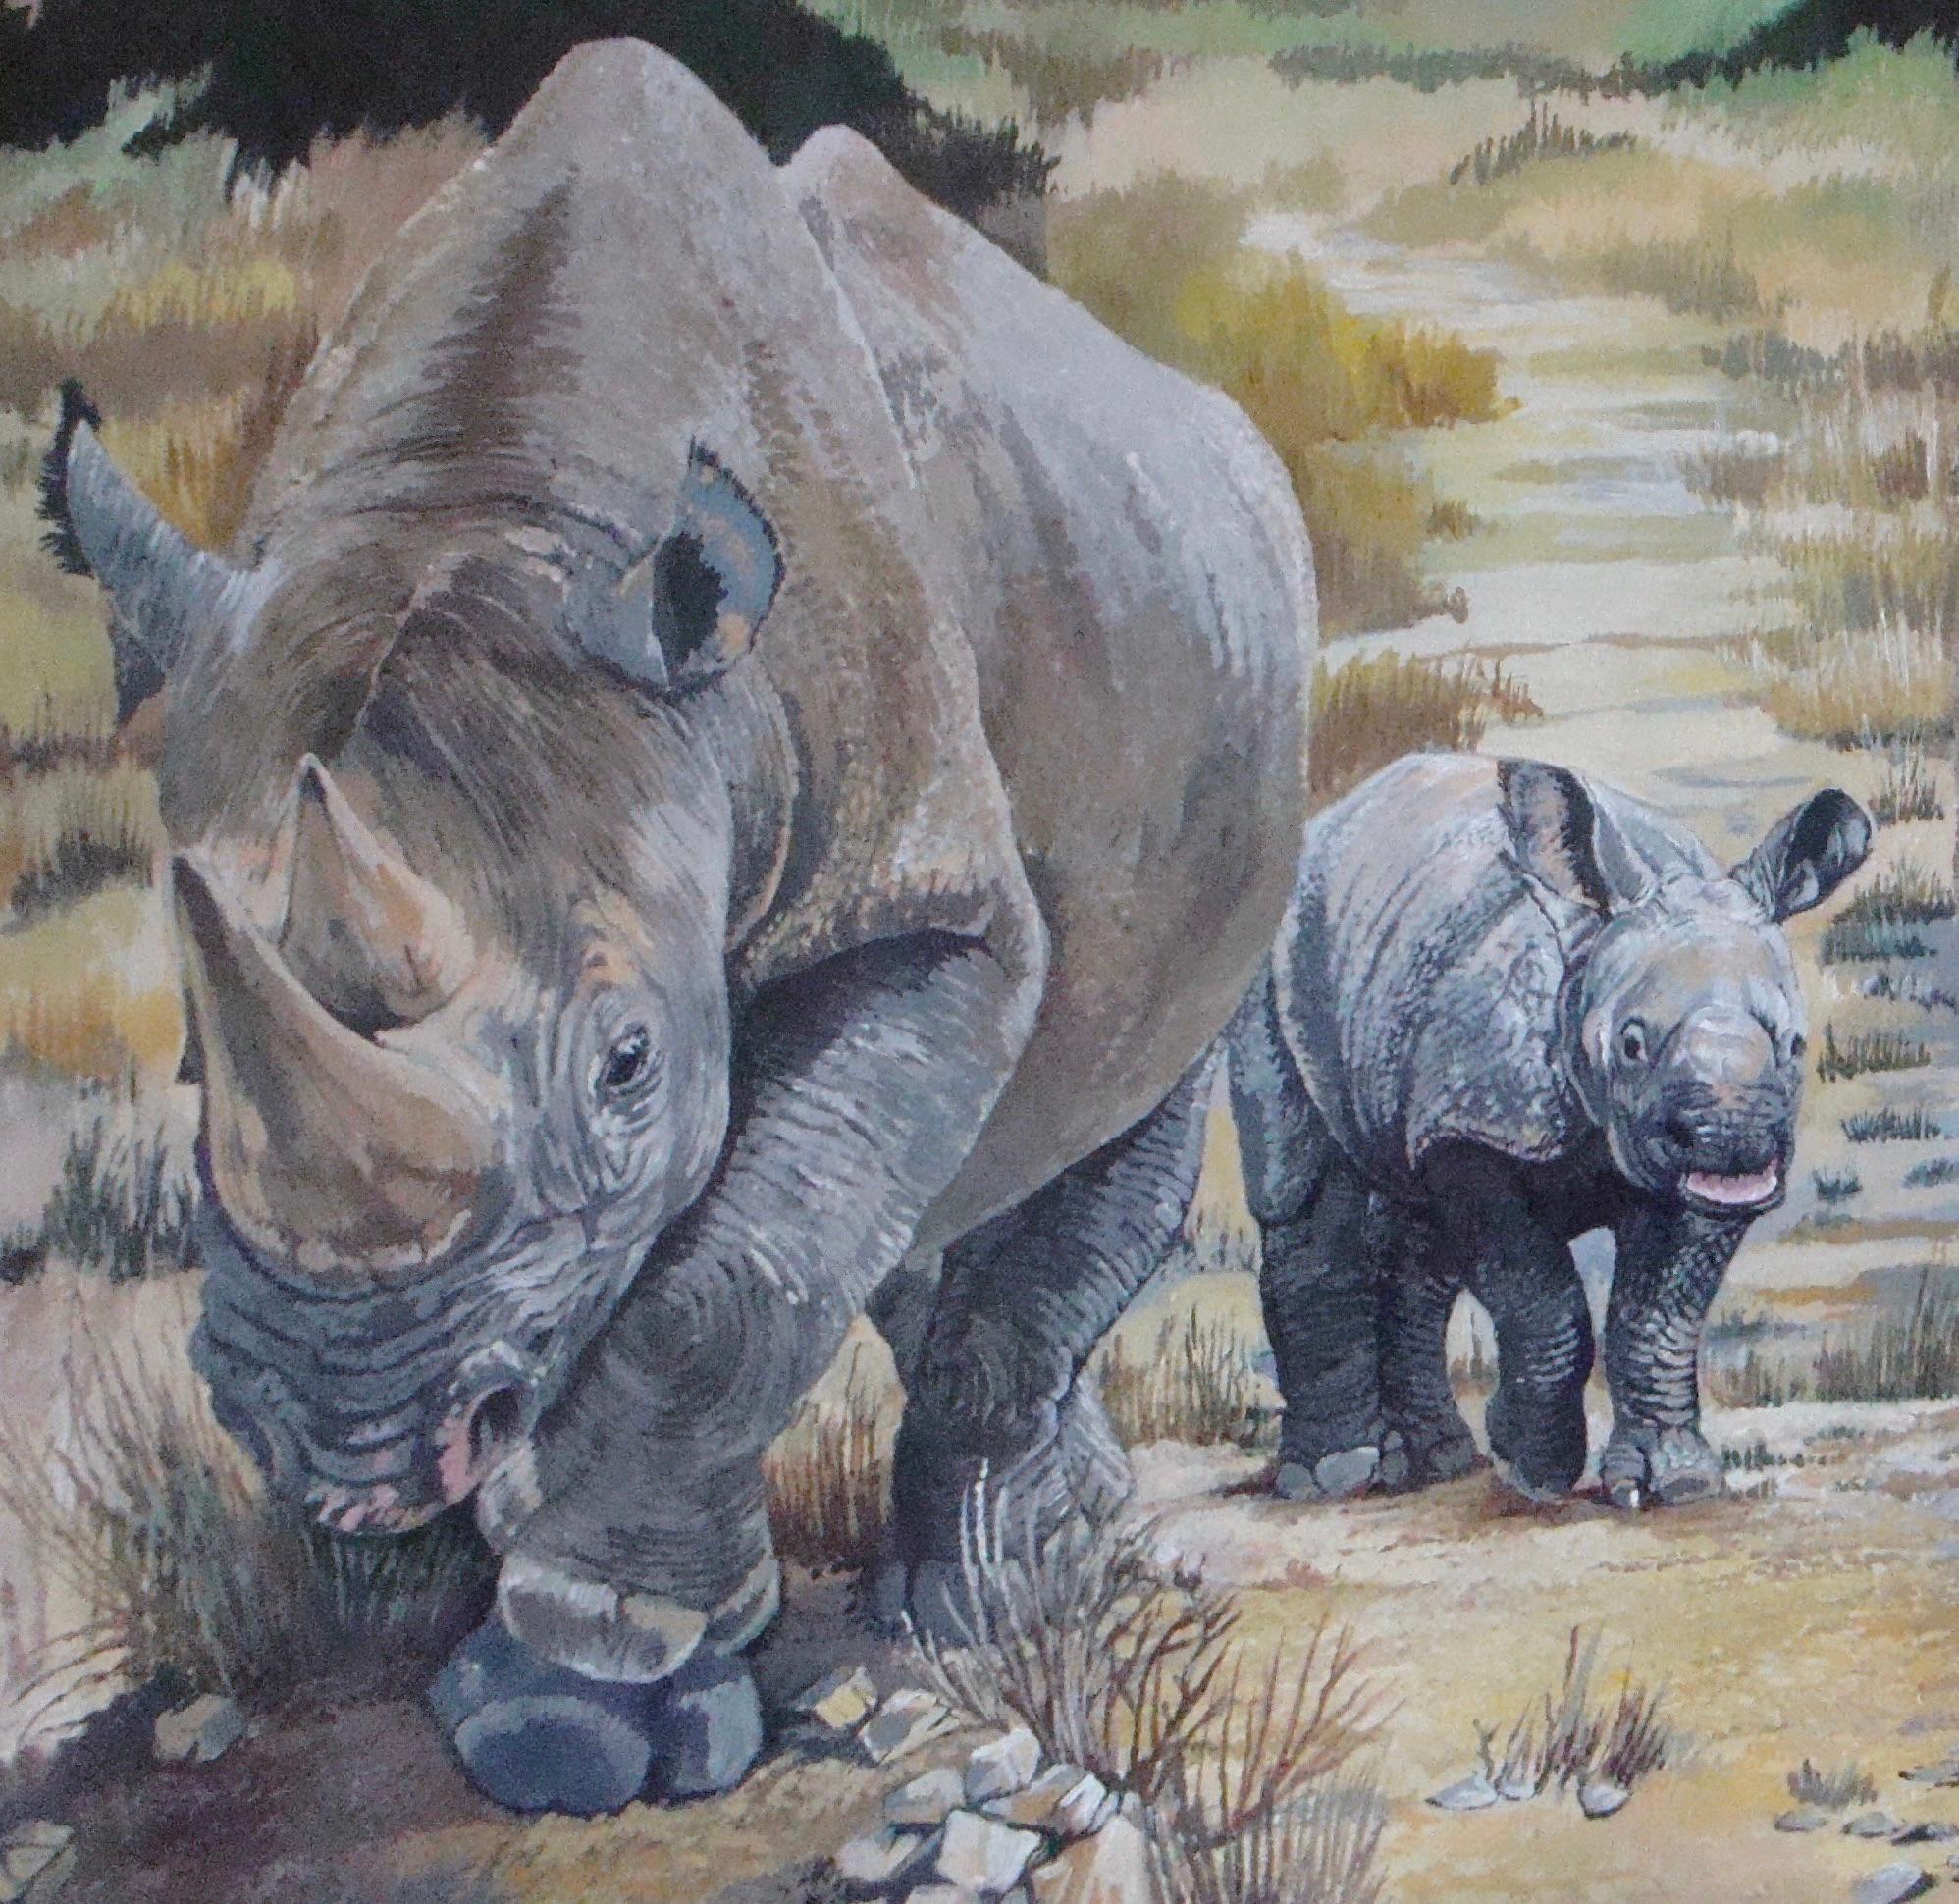 far side rhino painting